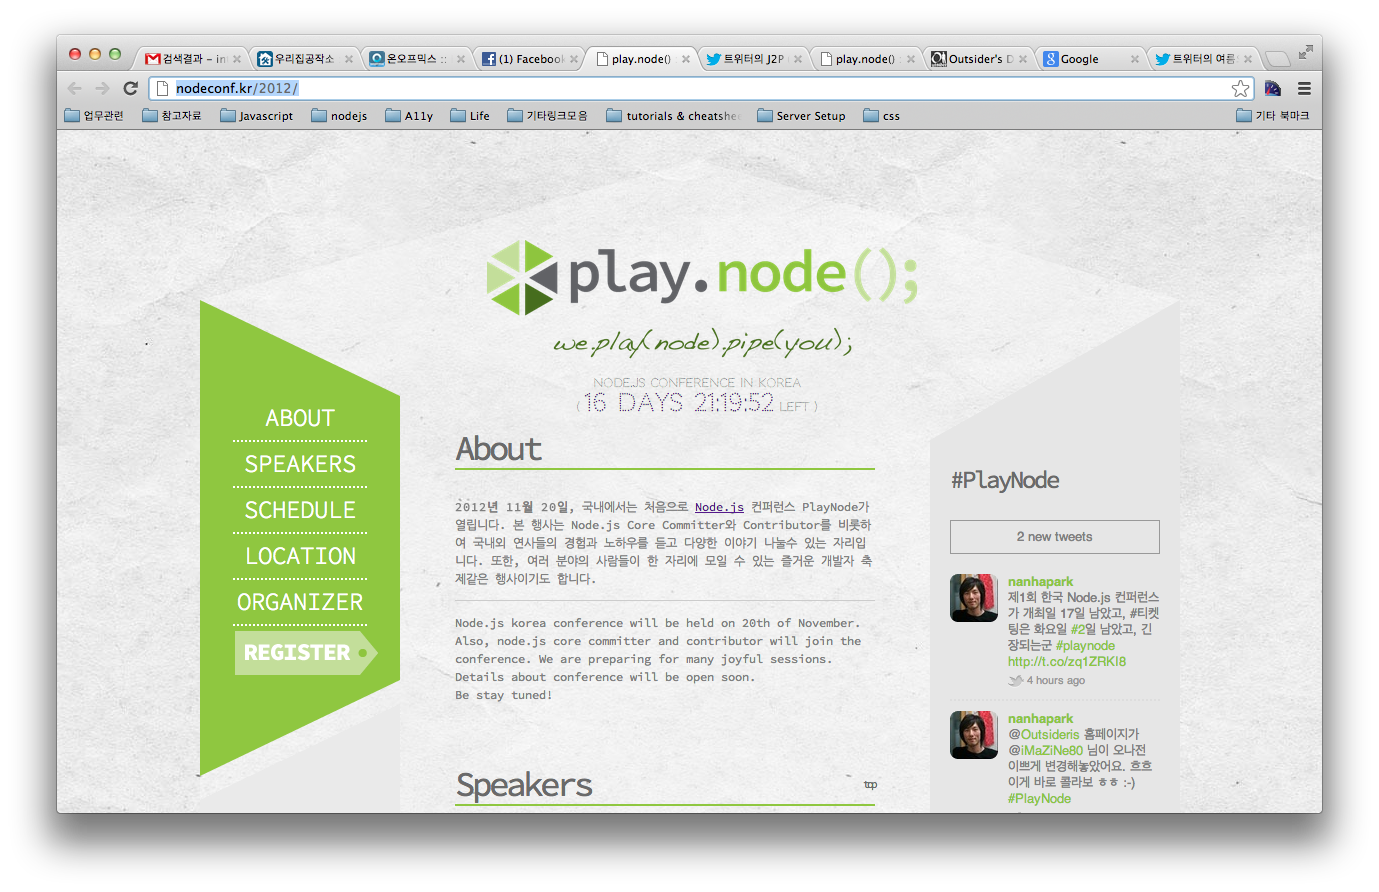 node.js korea conference 1st. PlayNode